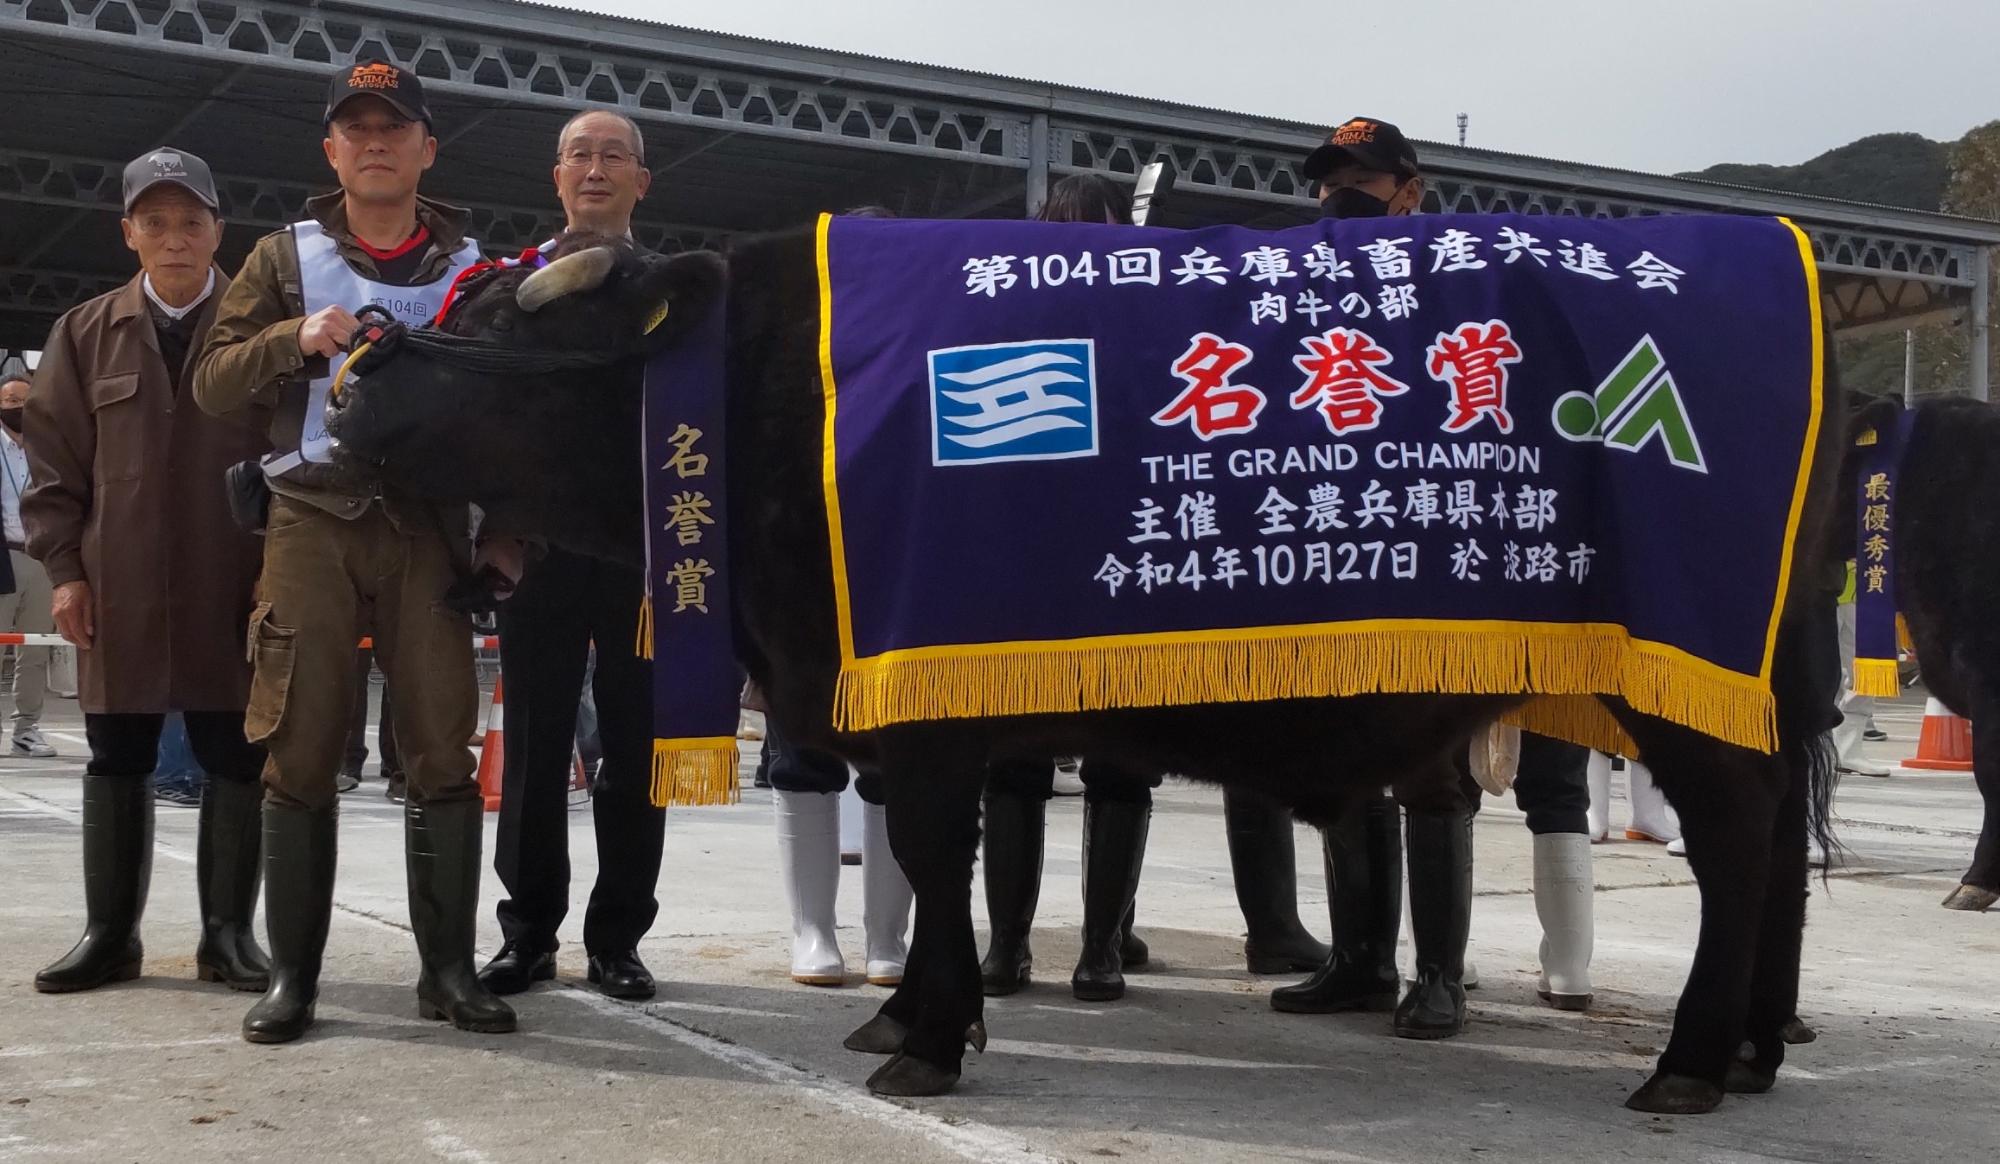 名誉賞という横断幕を牛にかけて田中さんと関係者の方が記念撮影